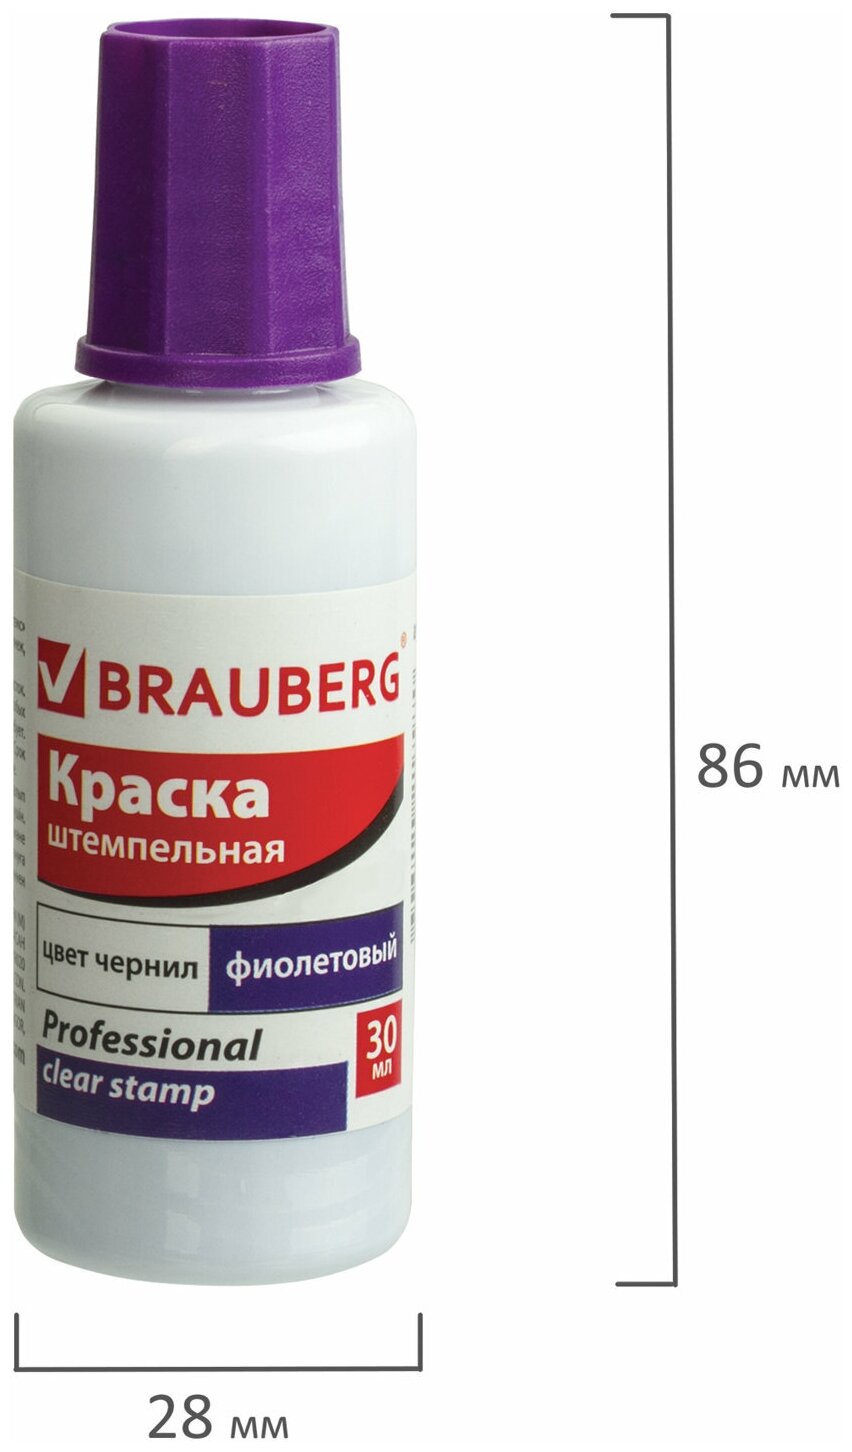 Краска емпельная BRAUBERG PROFESSIONAL clear stamp фиолетовая 30 мл на водной основе 227982